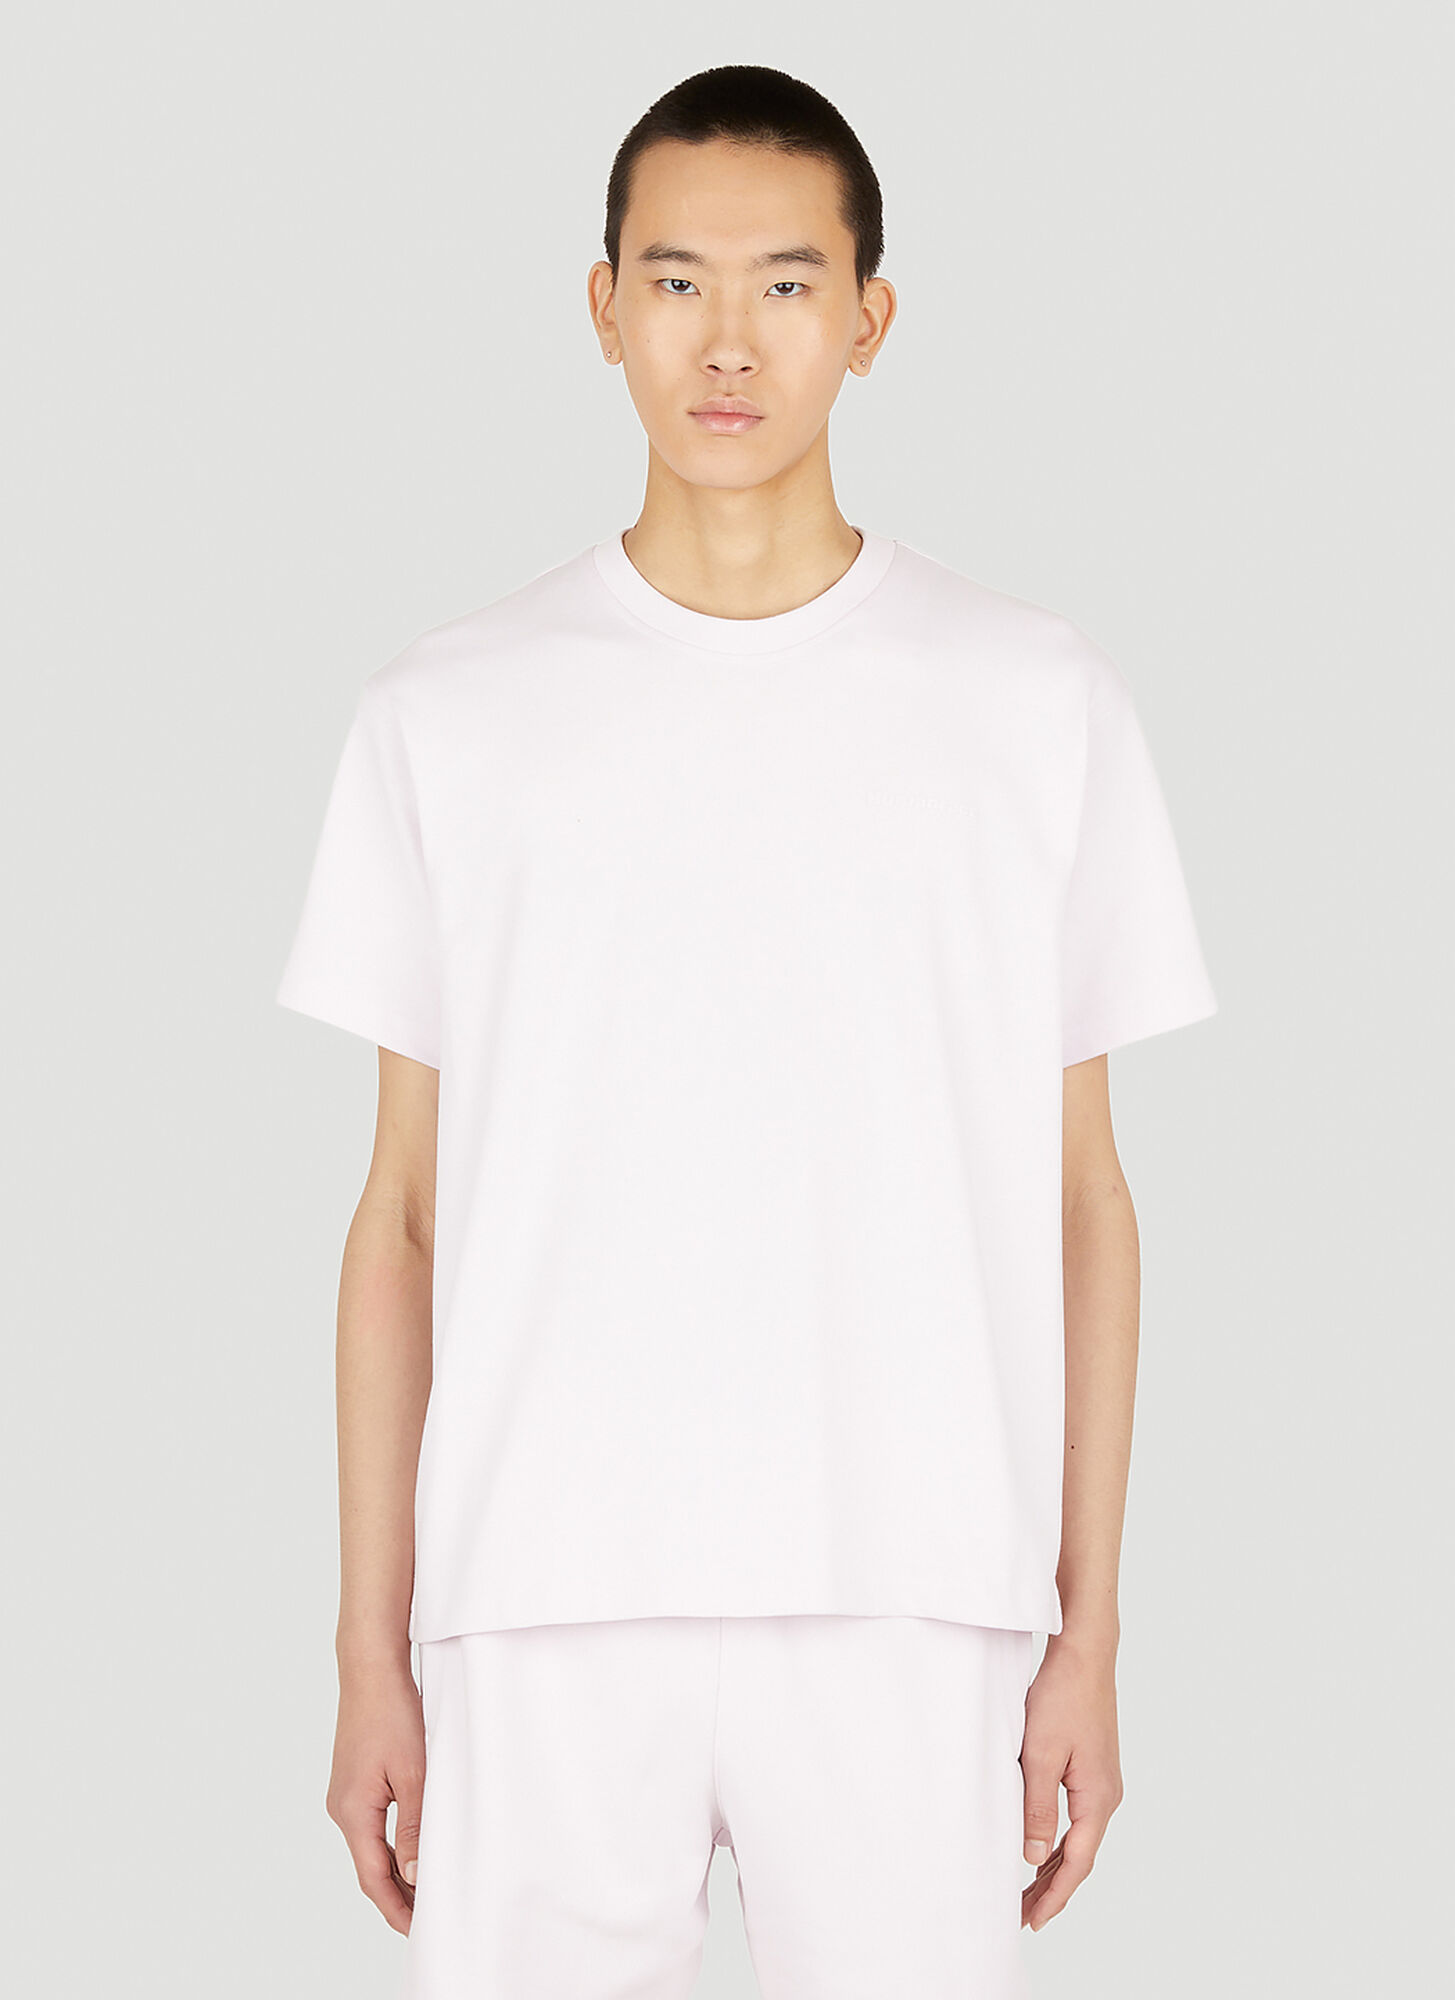 Adidas X Humanrace Basics T-shirt Male Pink